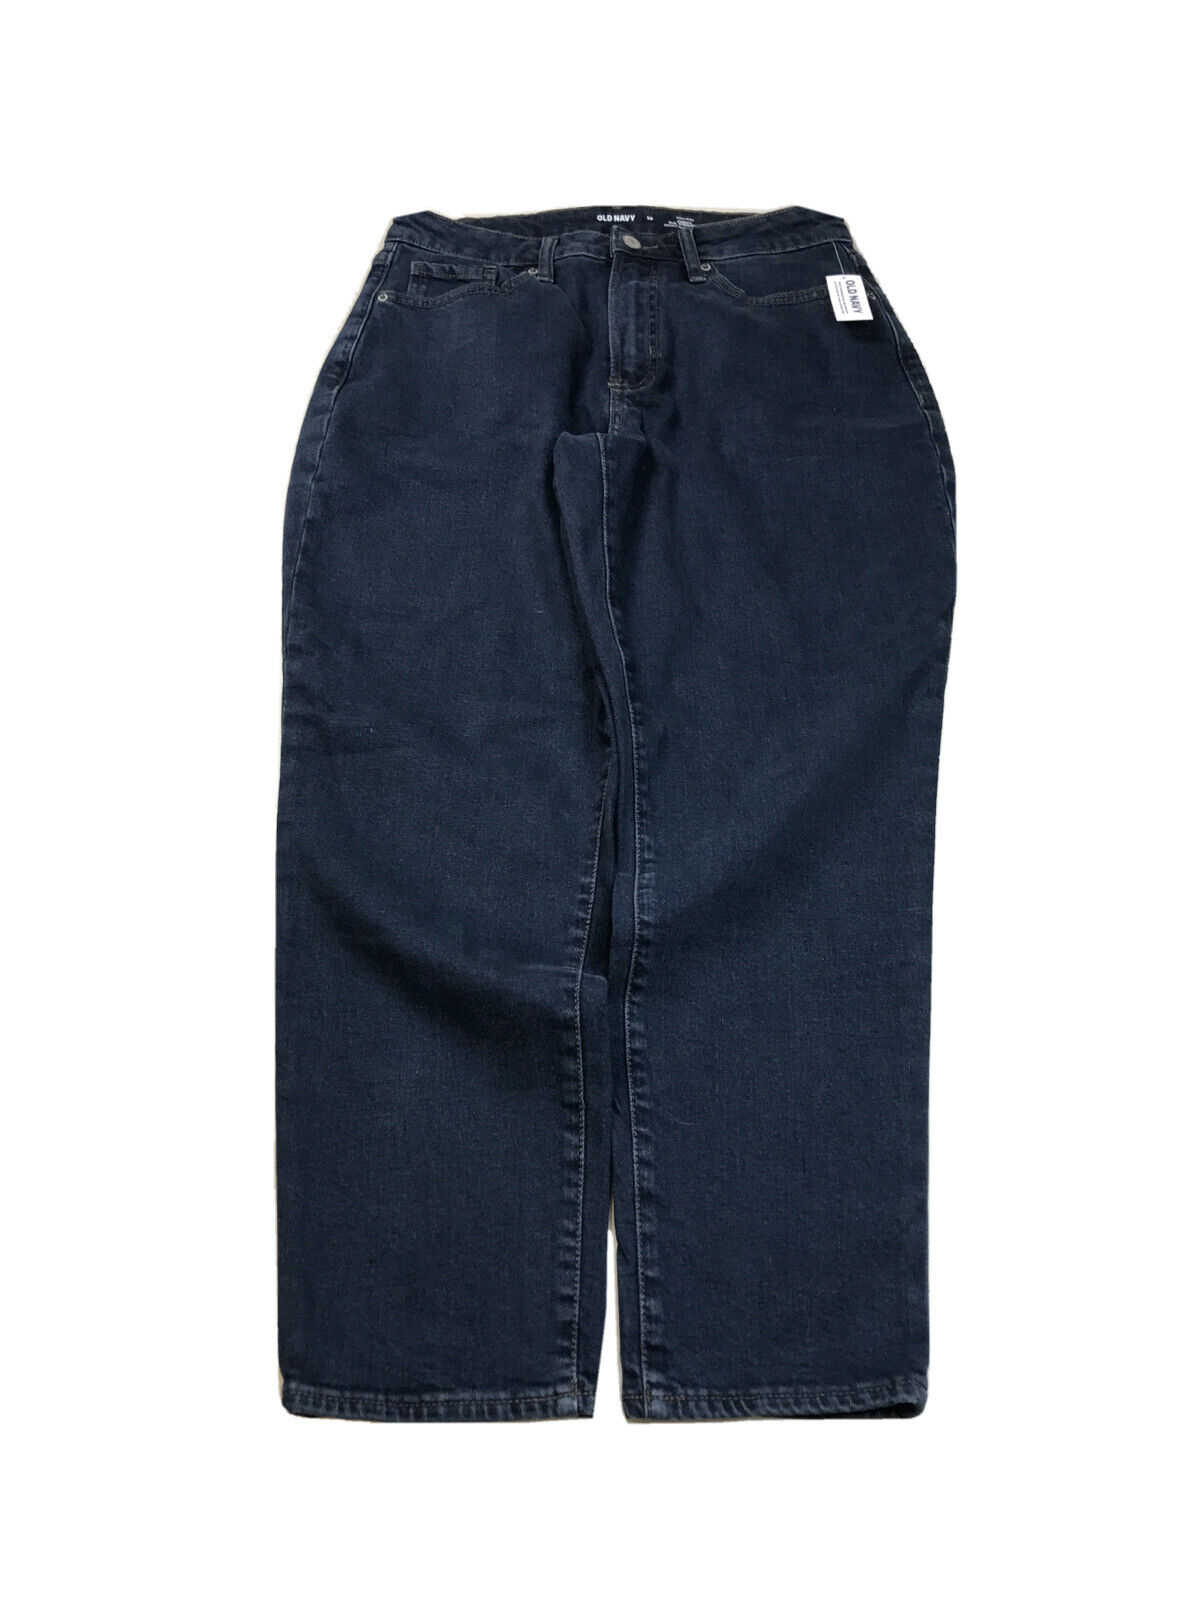 NEW Old Navy Women's Dark Wash High Rise Curvy Straight Denim Jeans - 10